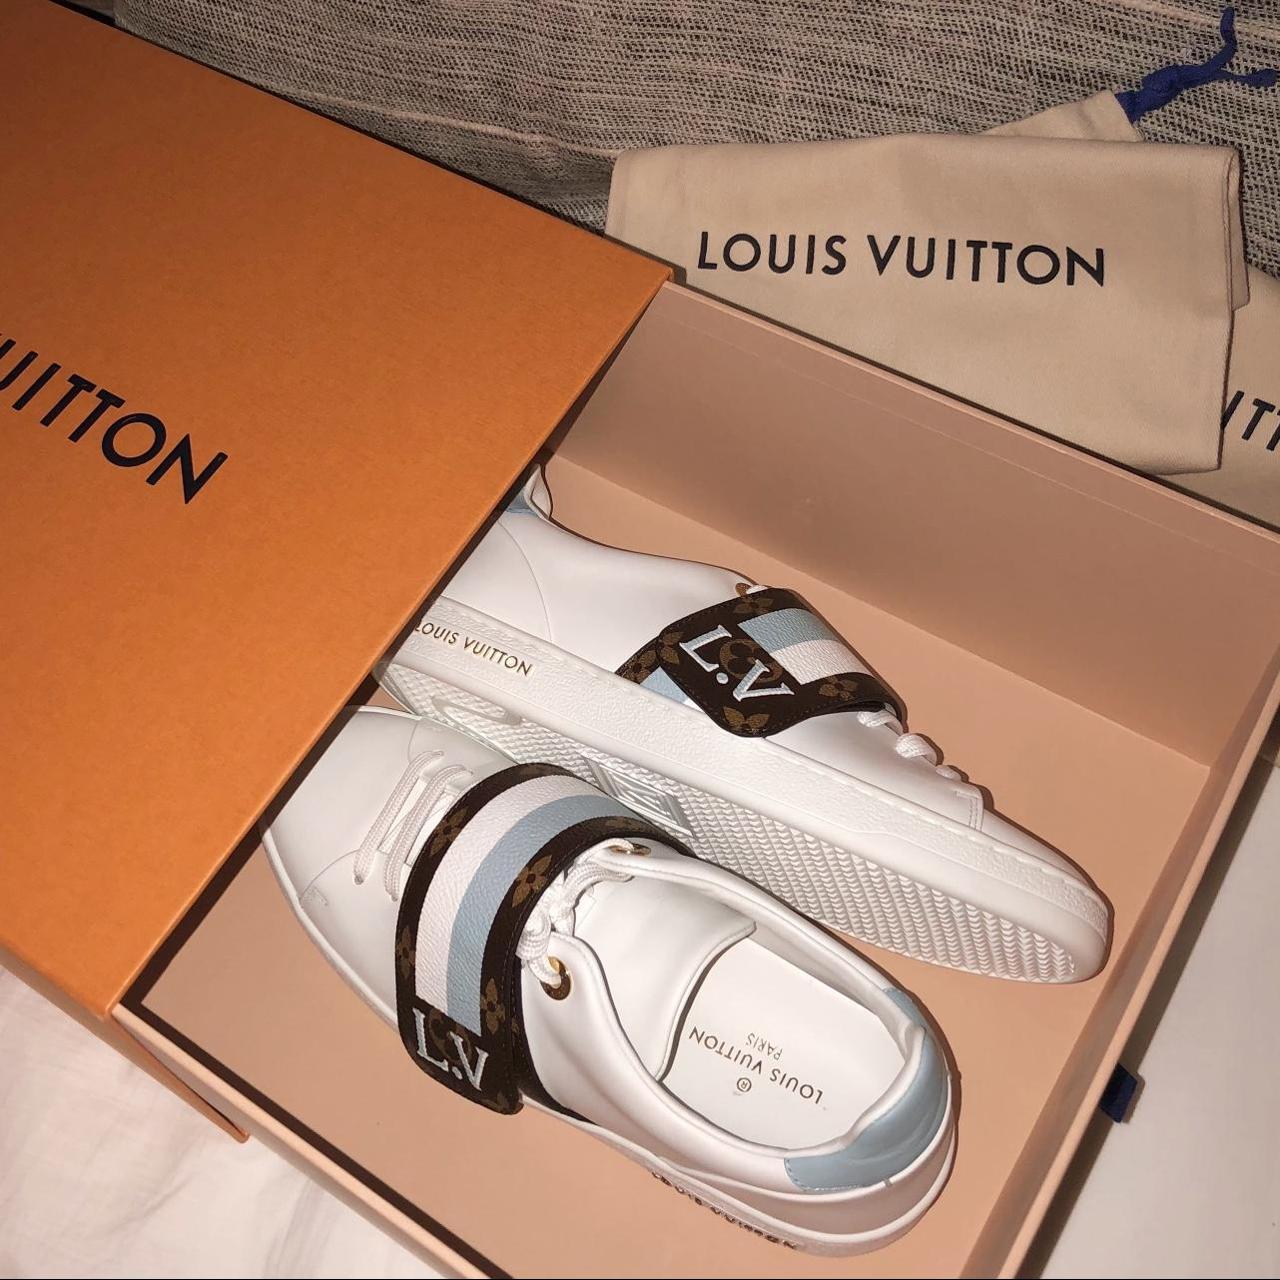 Louis Vuitton sneakers in size 37, US size 6.5 - Depop